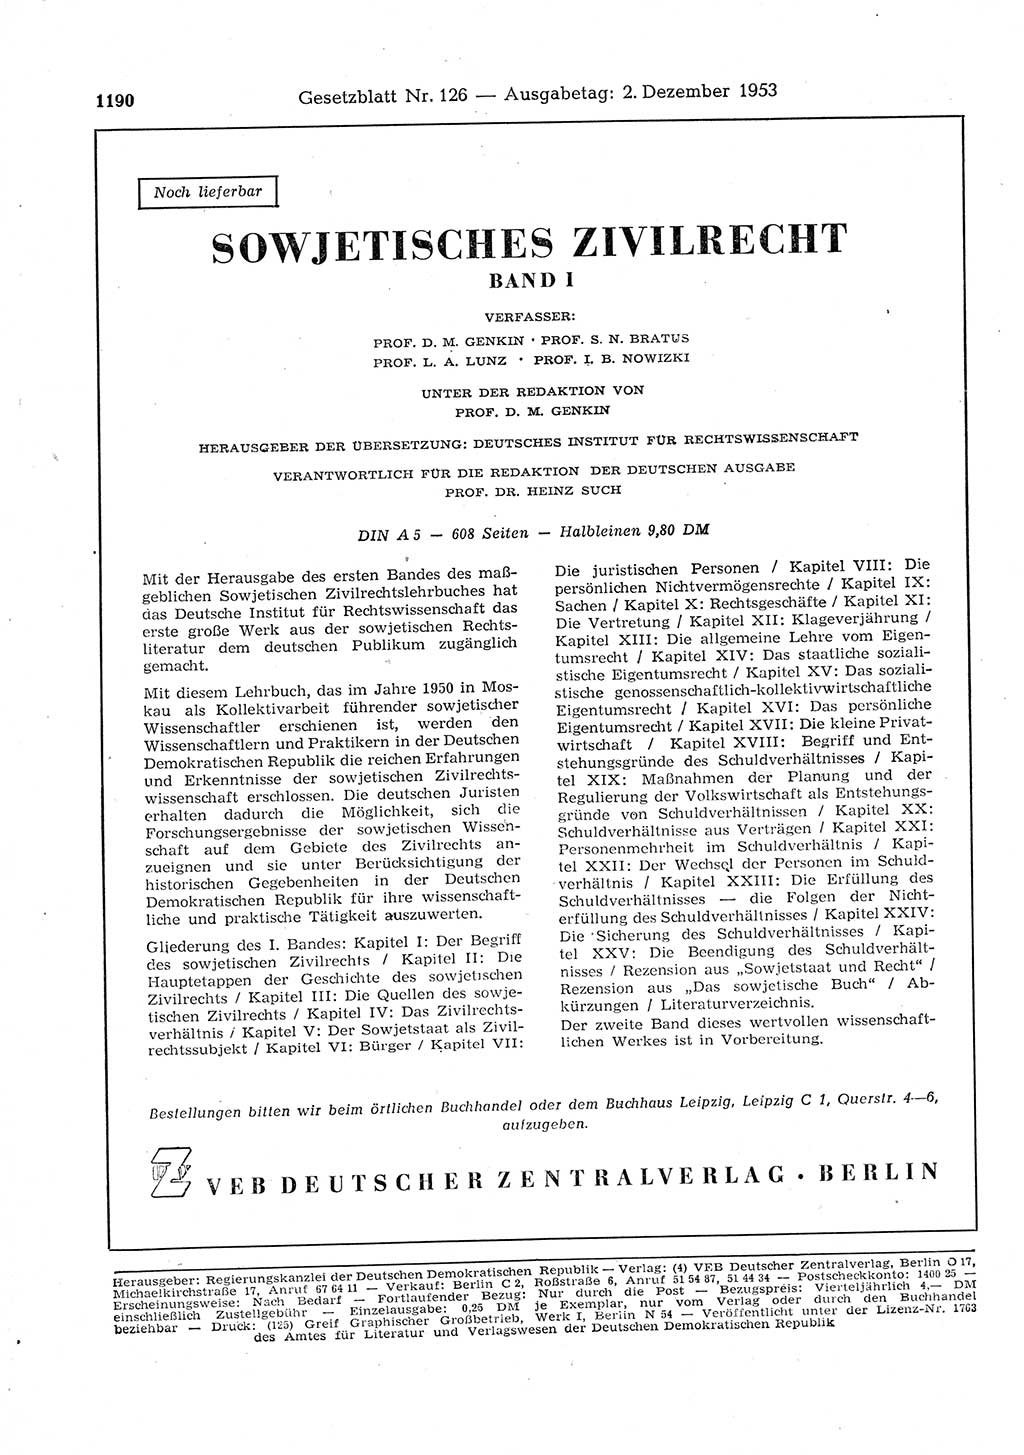 Gesetzblatt (GBl.) der Deutschen Demokratischen Republik (DDR) 1953, Seite 1190 (GBl. DDR 1953, S. 1190)